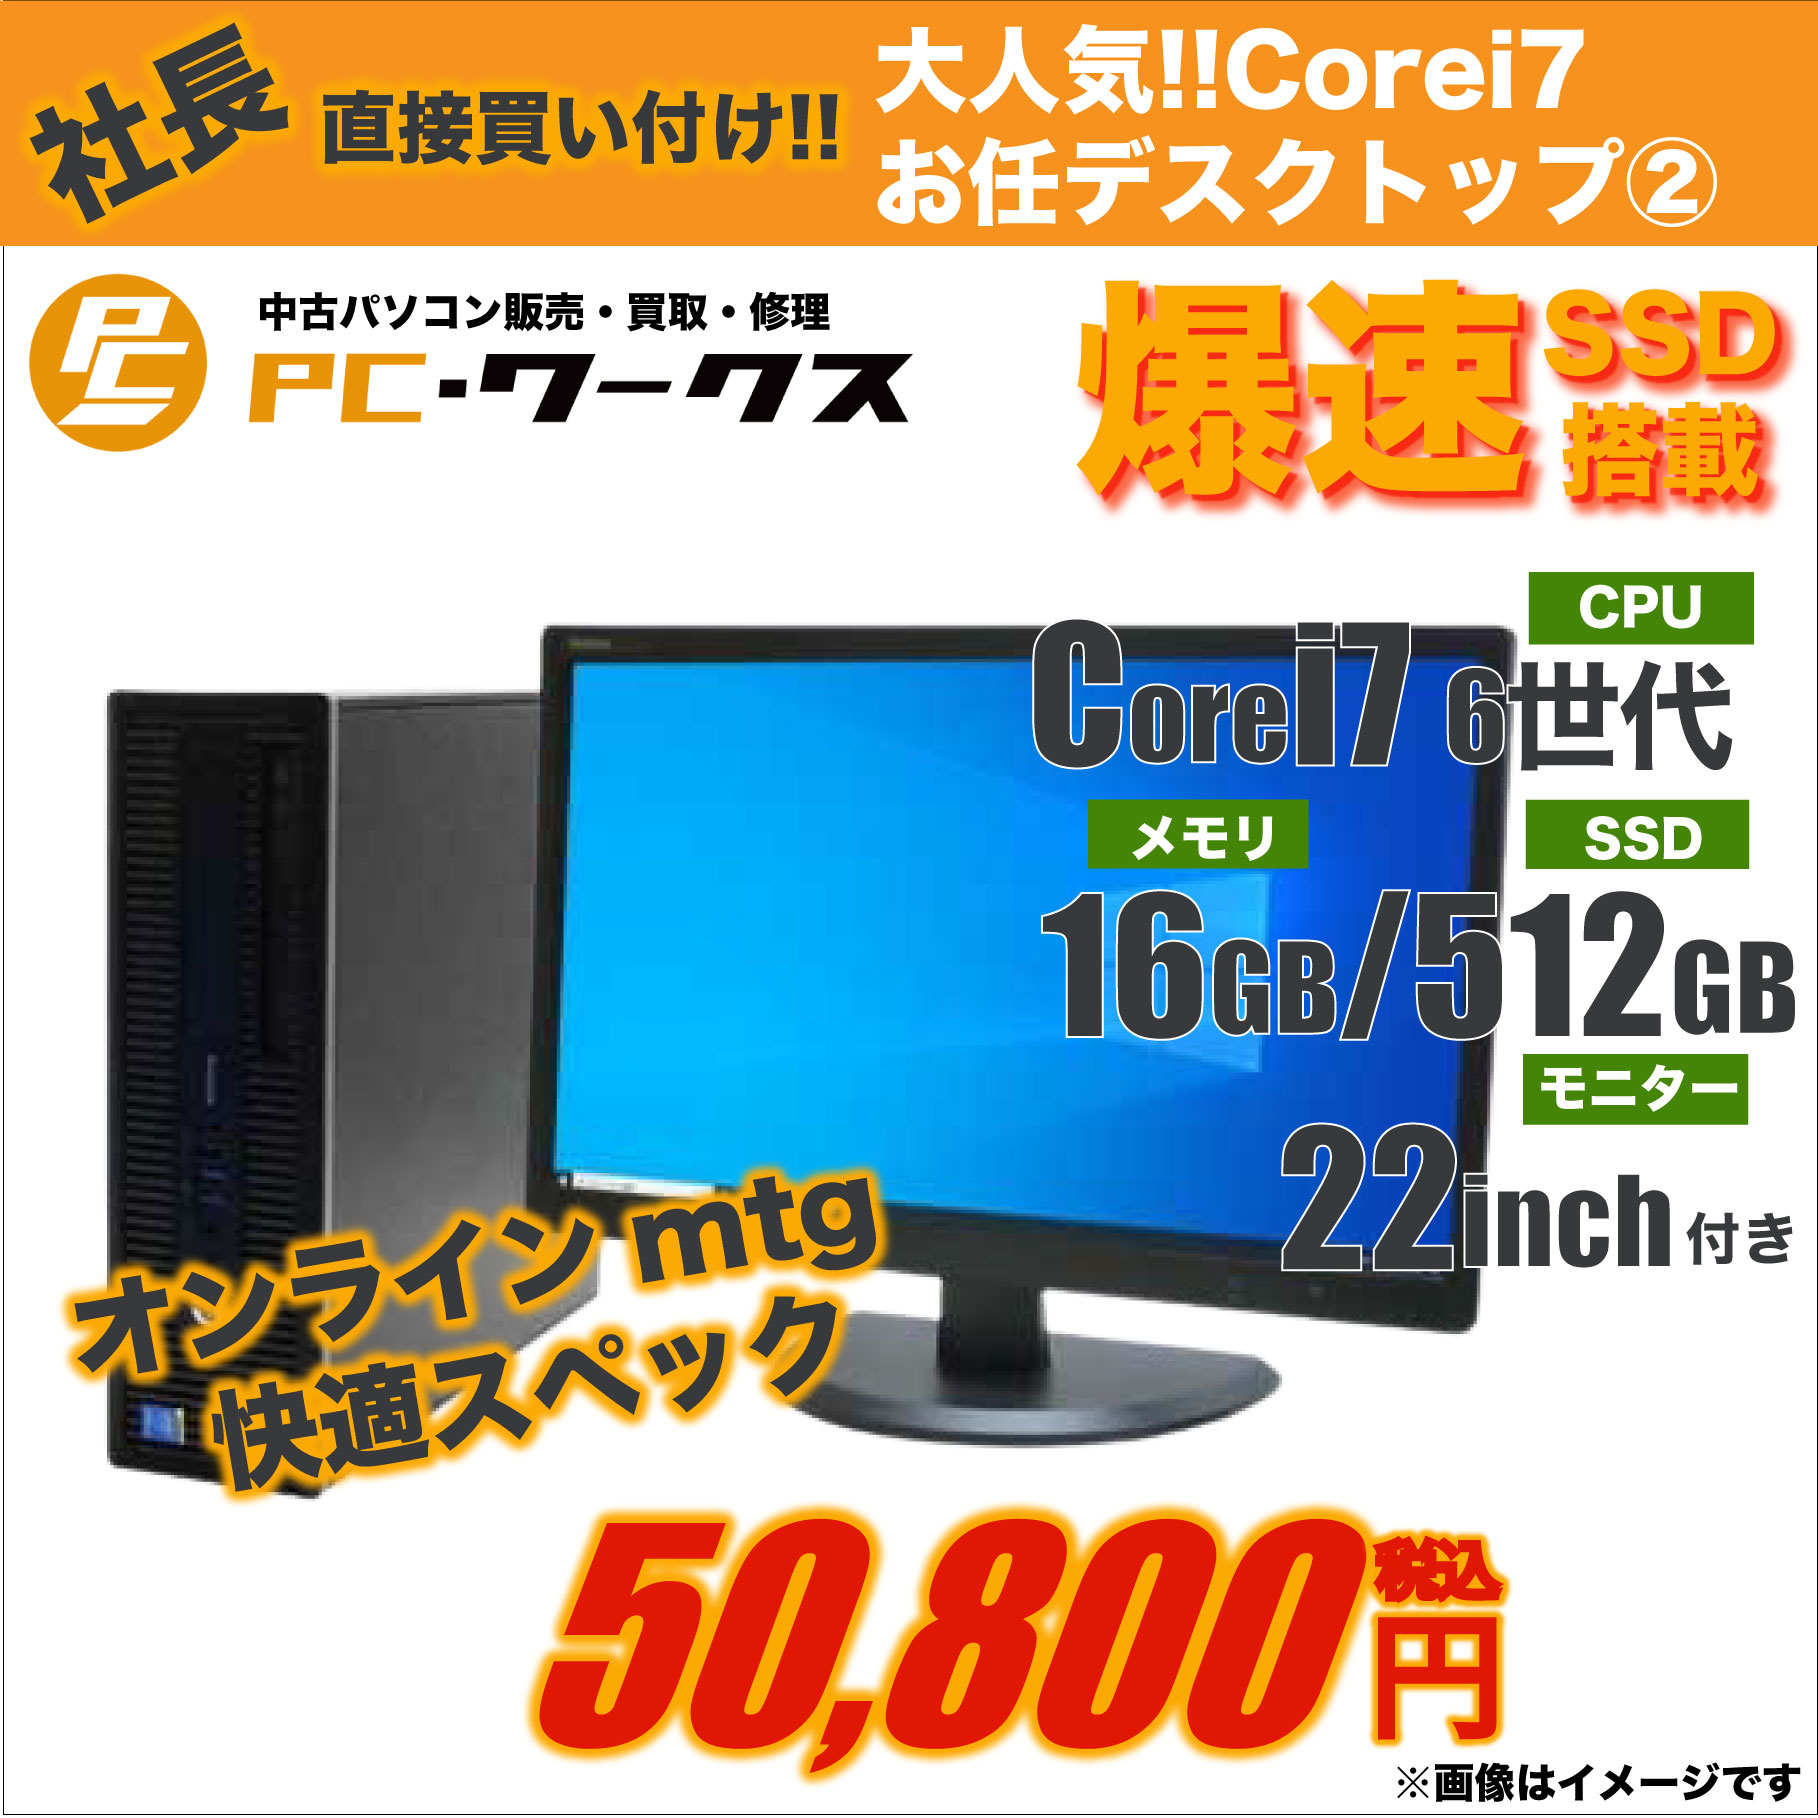 大人気 Corei7 お任せデスクトップパソコン②/22inchモニター